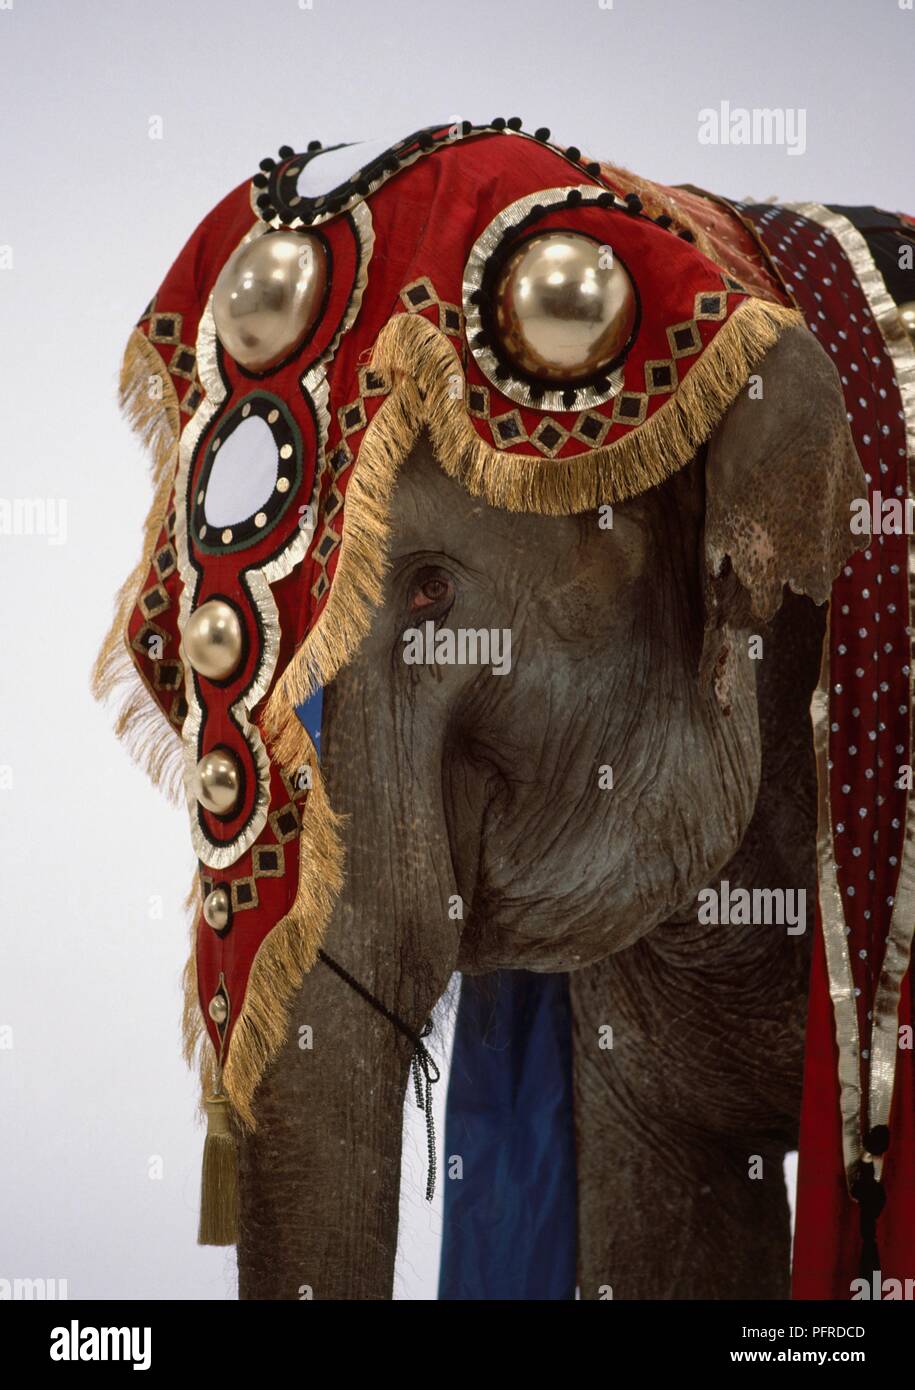 Elephant wearing ornate headdress, profile Stock Photo